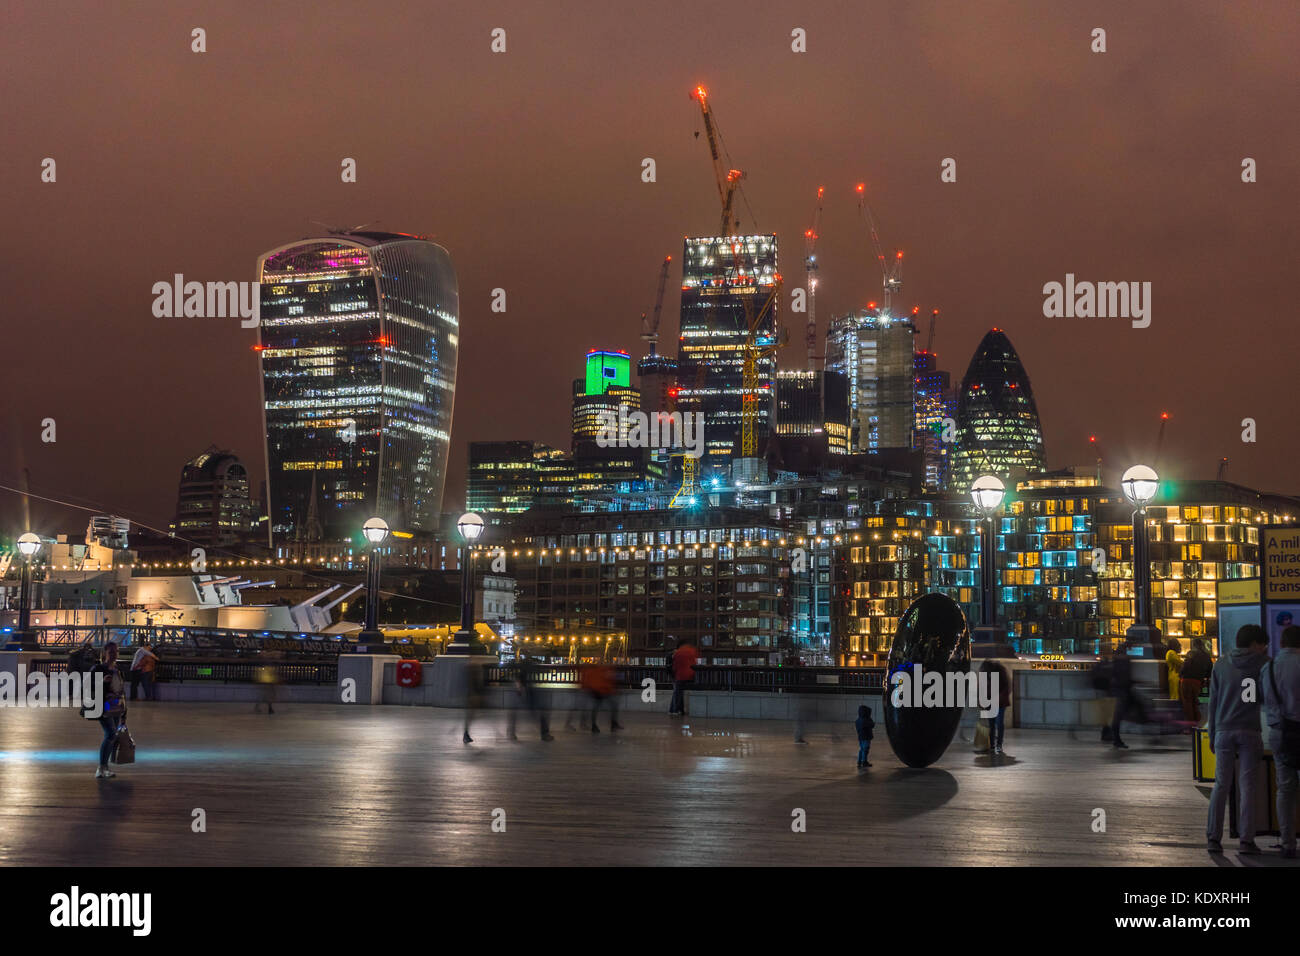 El distrito financiero de noche skyline en 2017, la ciudad de Londres, Inglaterra, Reino Unido. Foto de stock